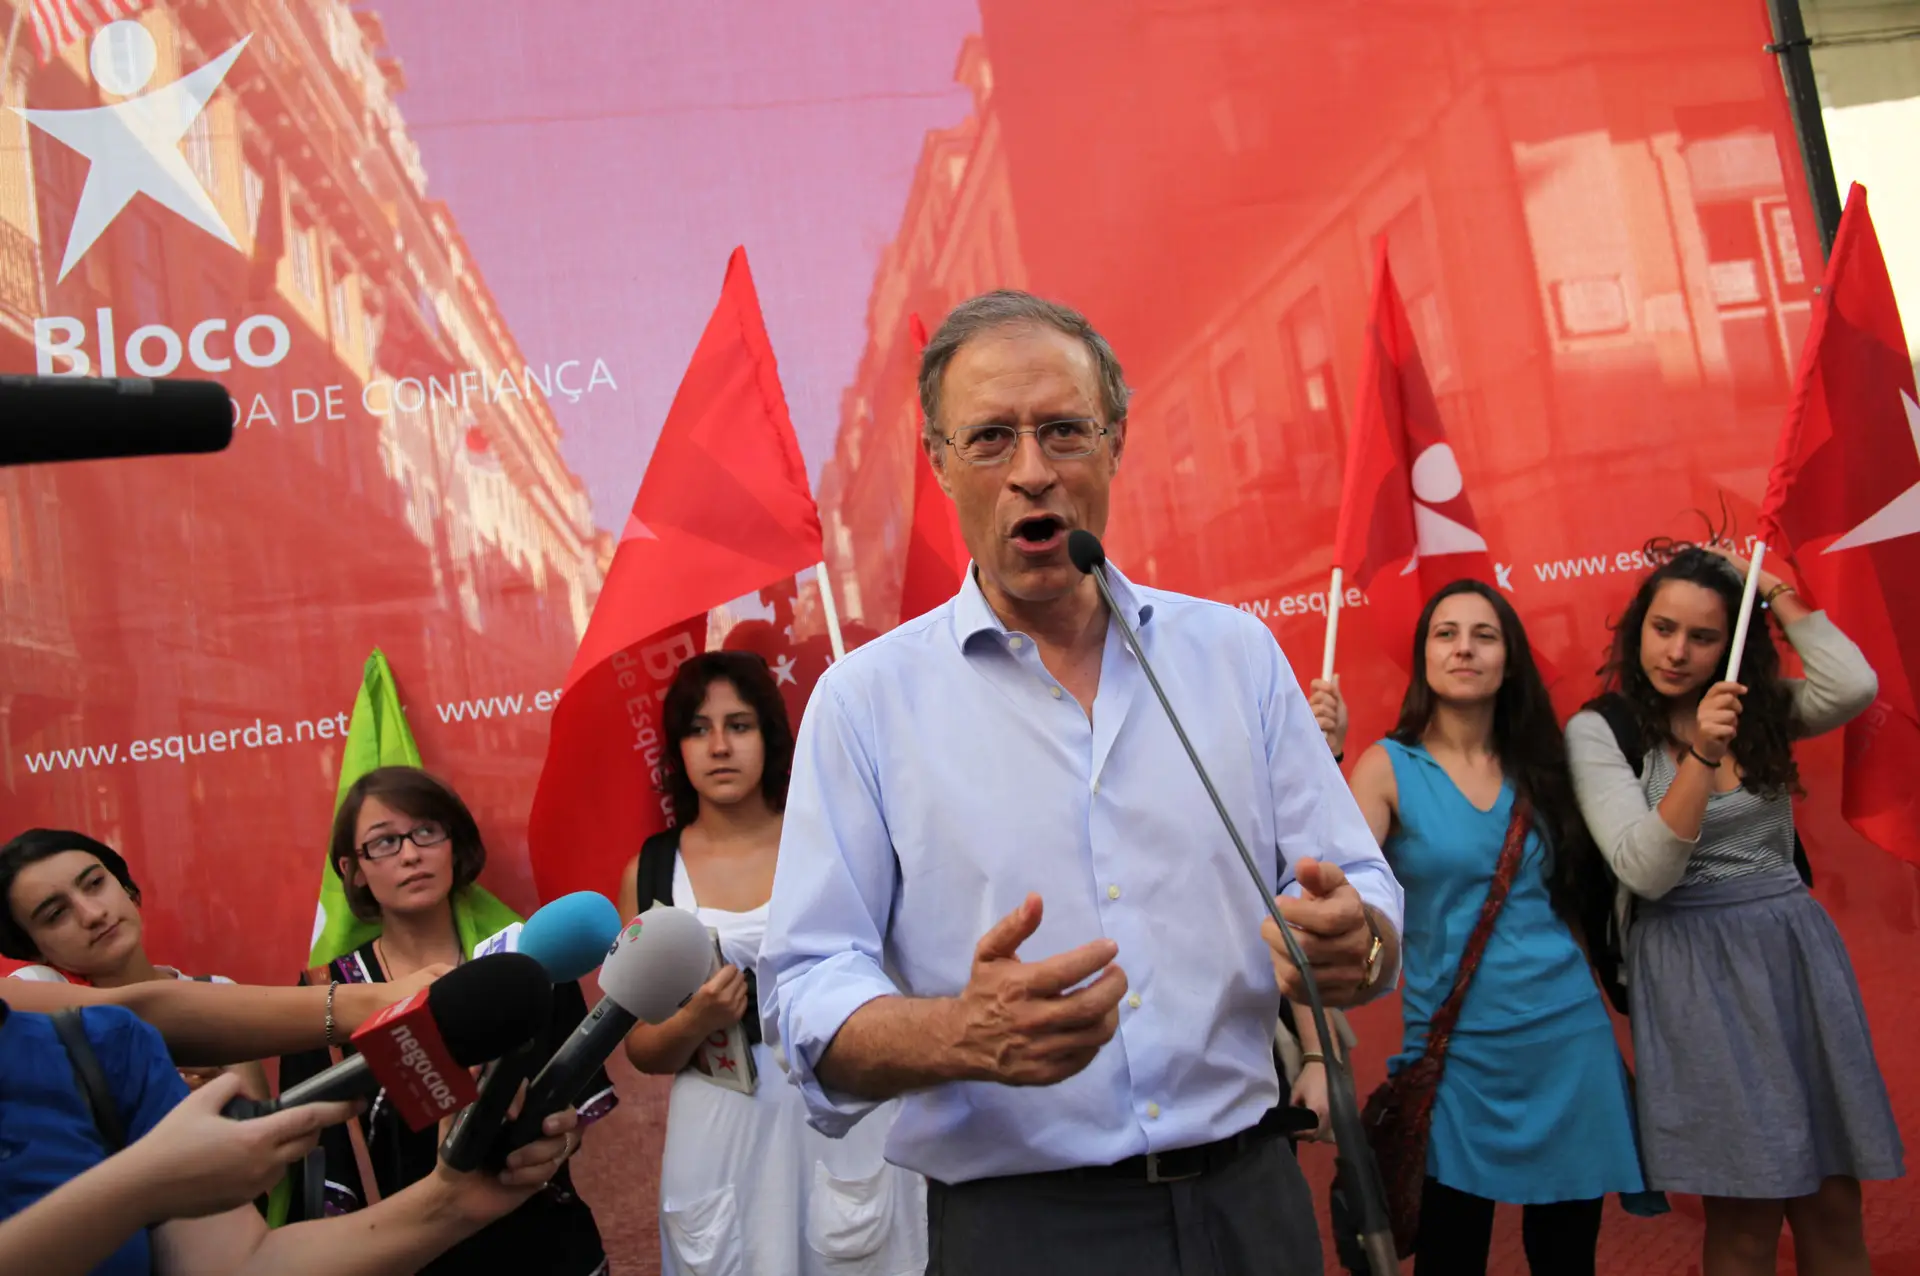 Francisco Louçã: “Perda de influência da esquerda, consolidação ao centro e radicalização à direita”